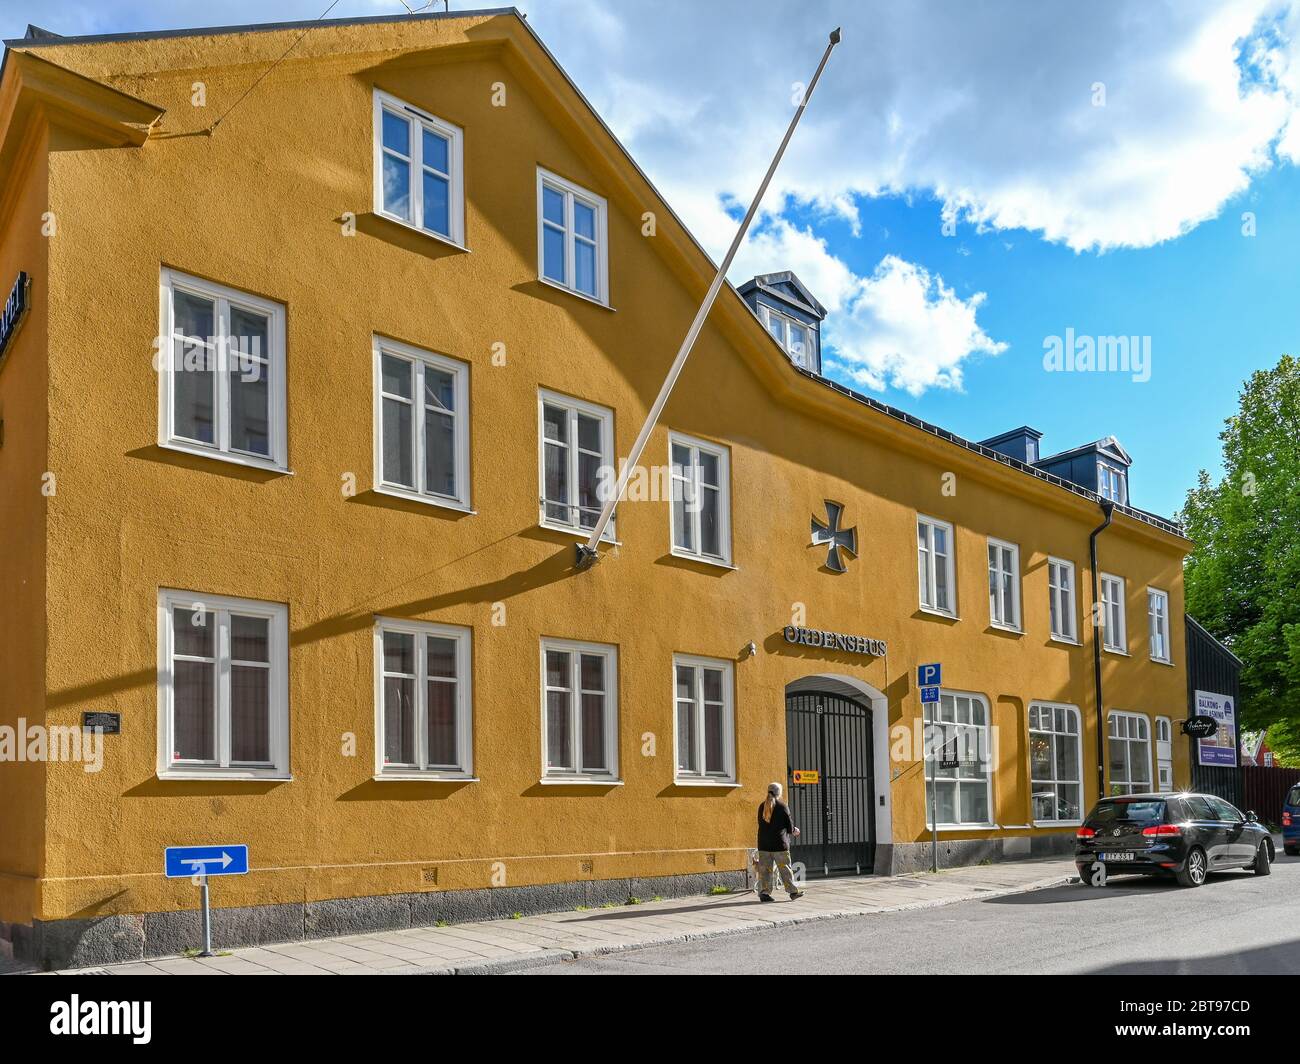 Albergo per ordine fraterno W6 a Bredgatan nel centro di Norrkoping. Norrkoping è una storica città industriale. Foto Stock